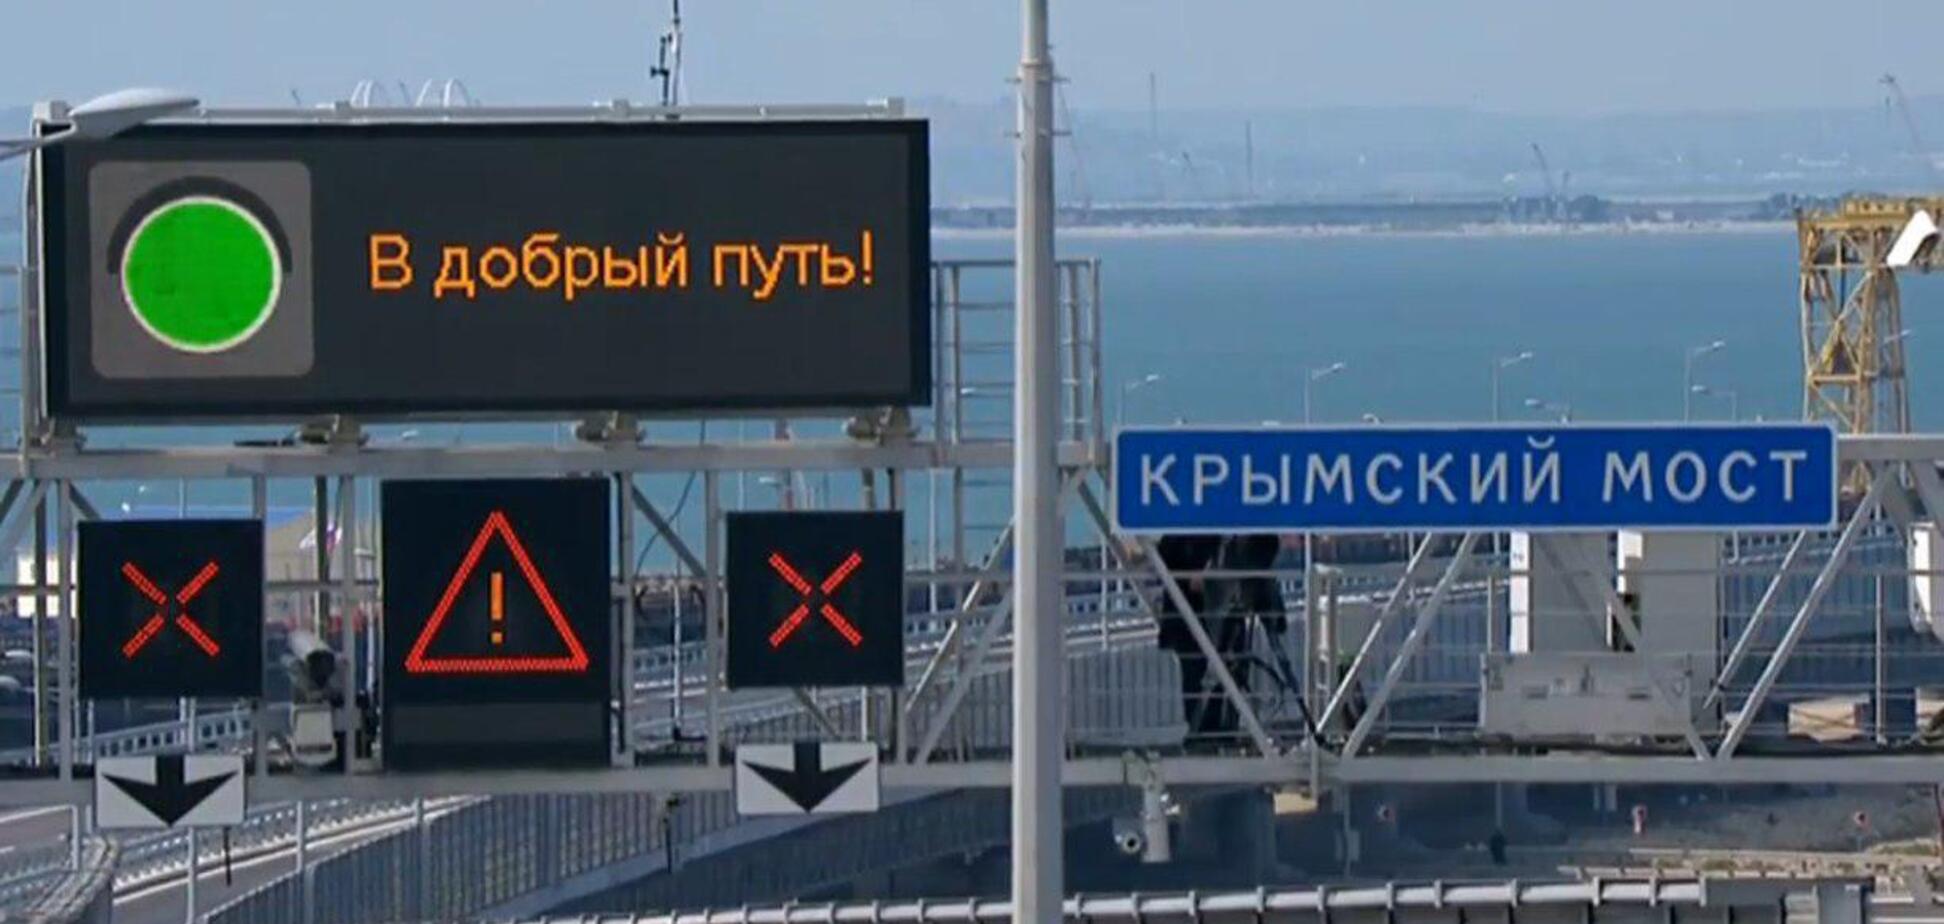 'Хрустальный': открытие Крымского моста высмеяли в едкой карикатуре